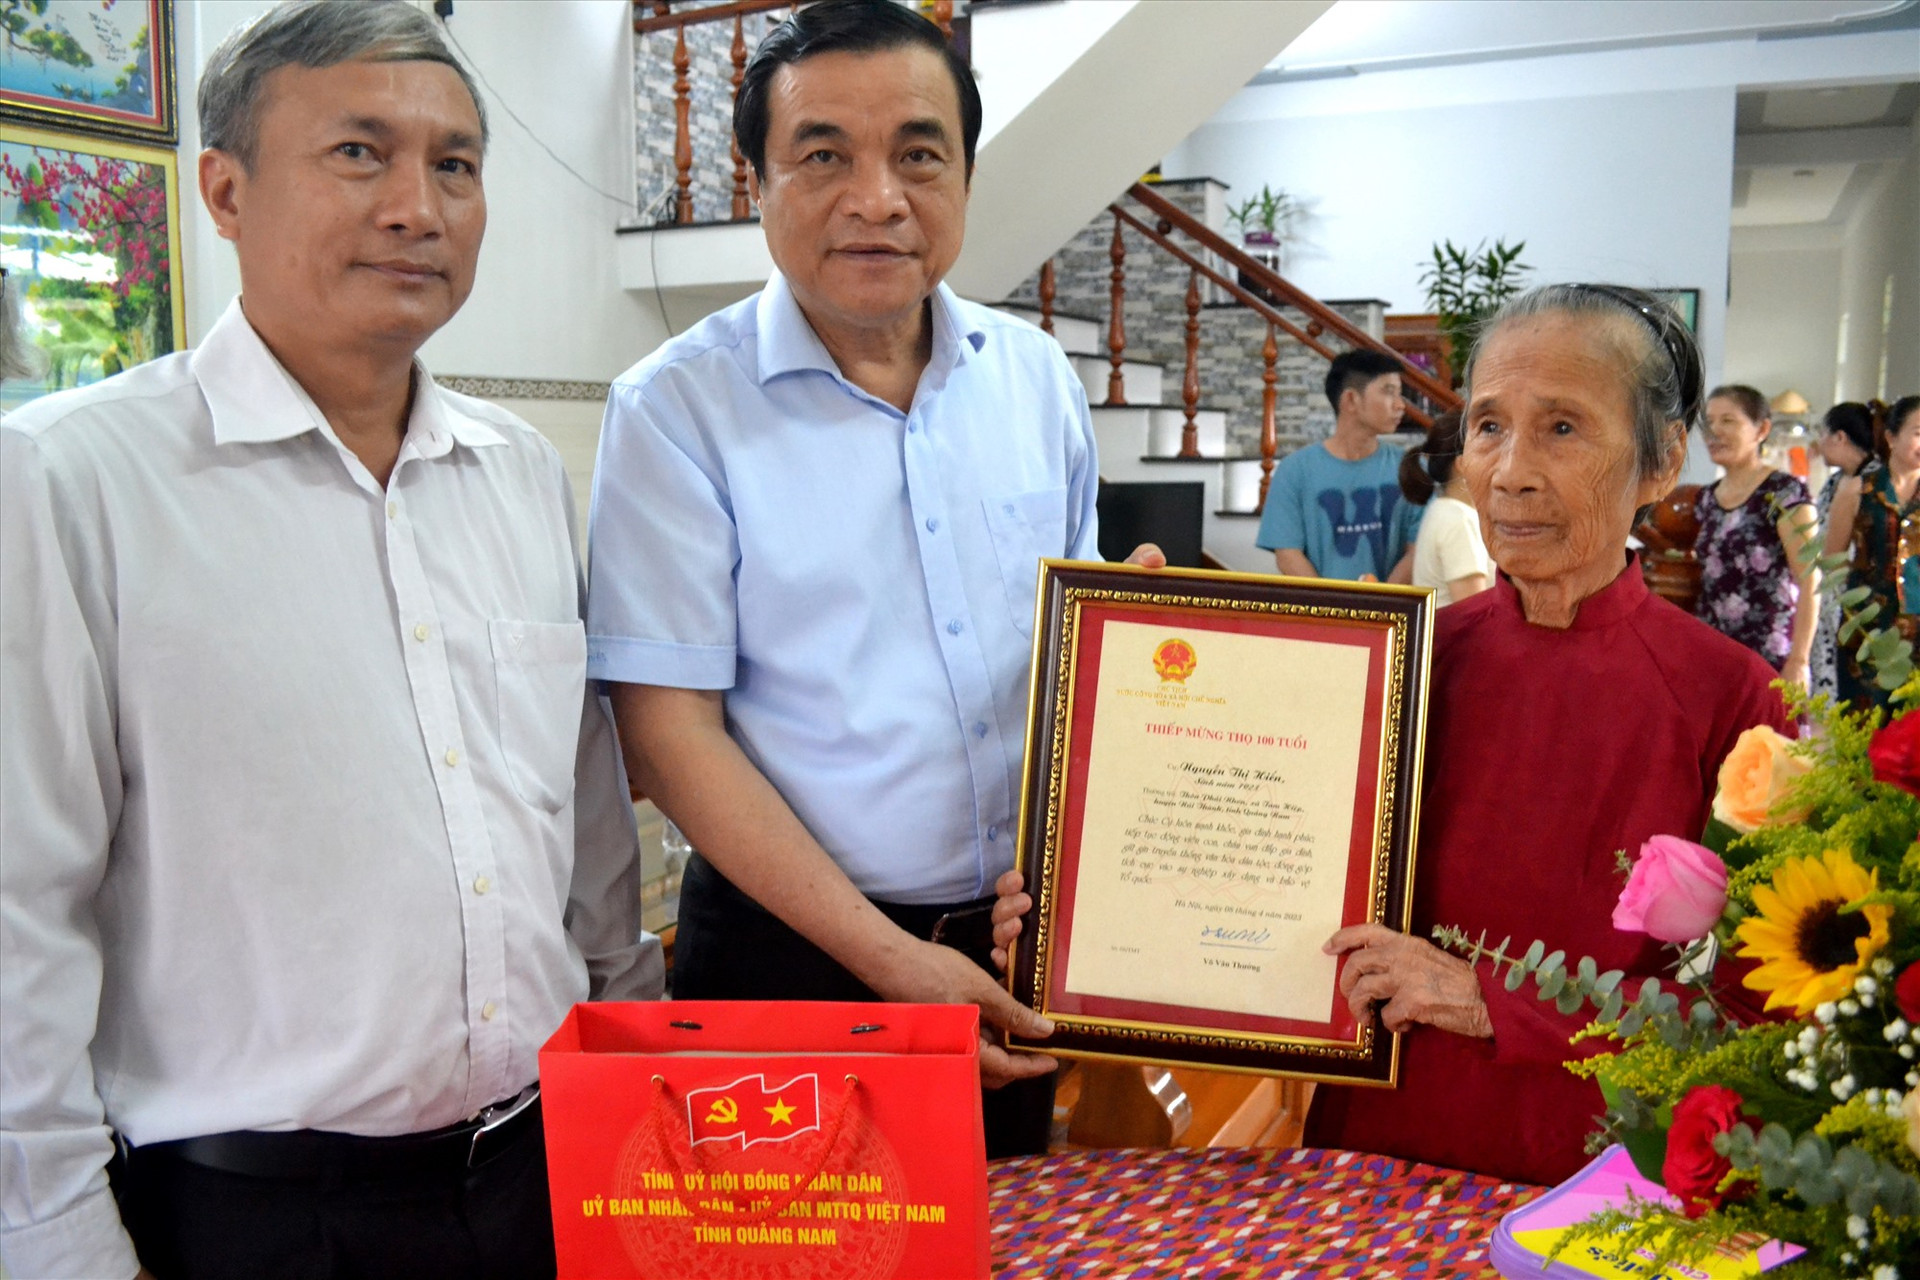 Đồng chí Phan Việt Cường cùng đoàn công tác đến thăm, tặng quà cụ Nguyễn Thị Hiền. Ảnh: Q.VIỆT